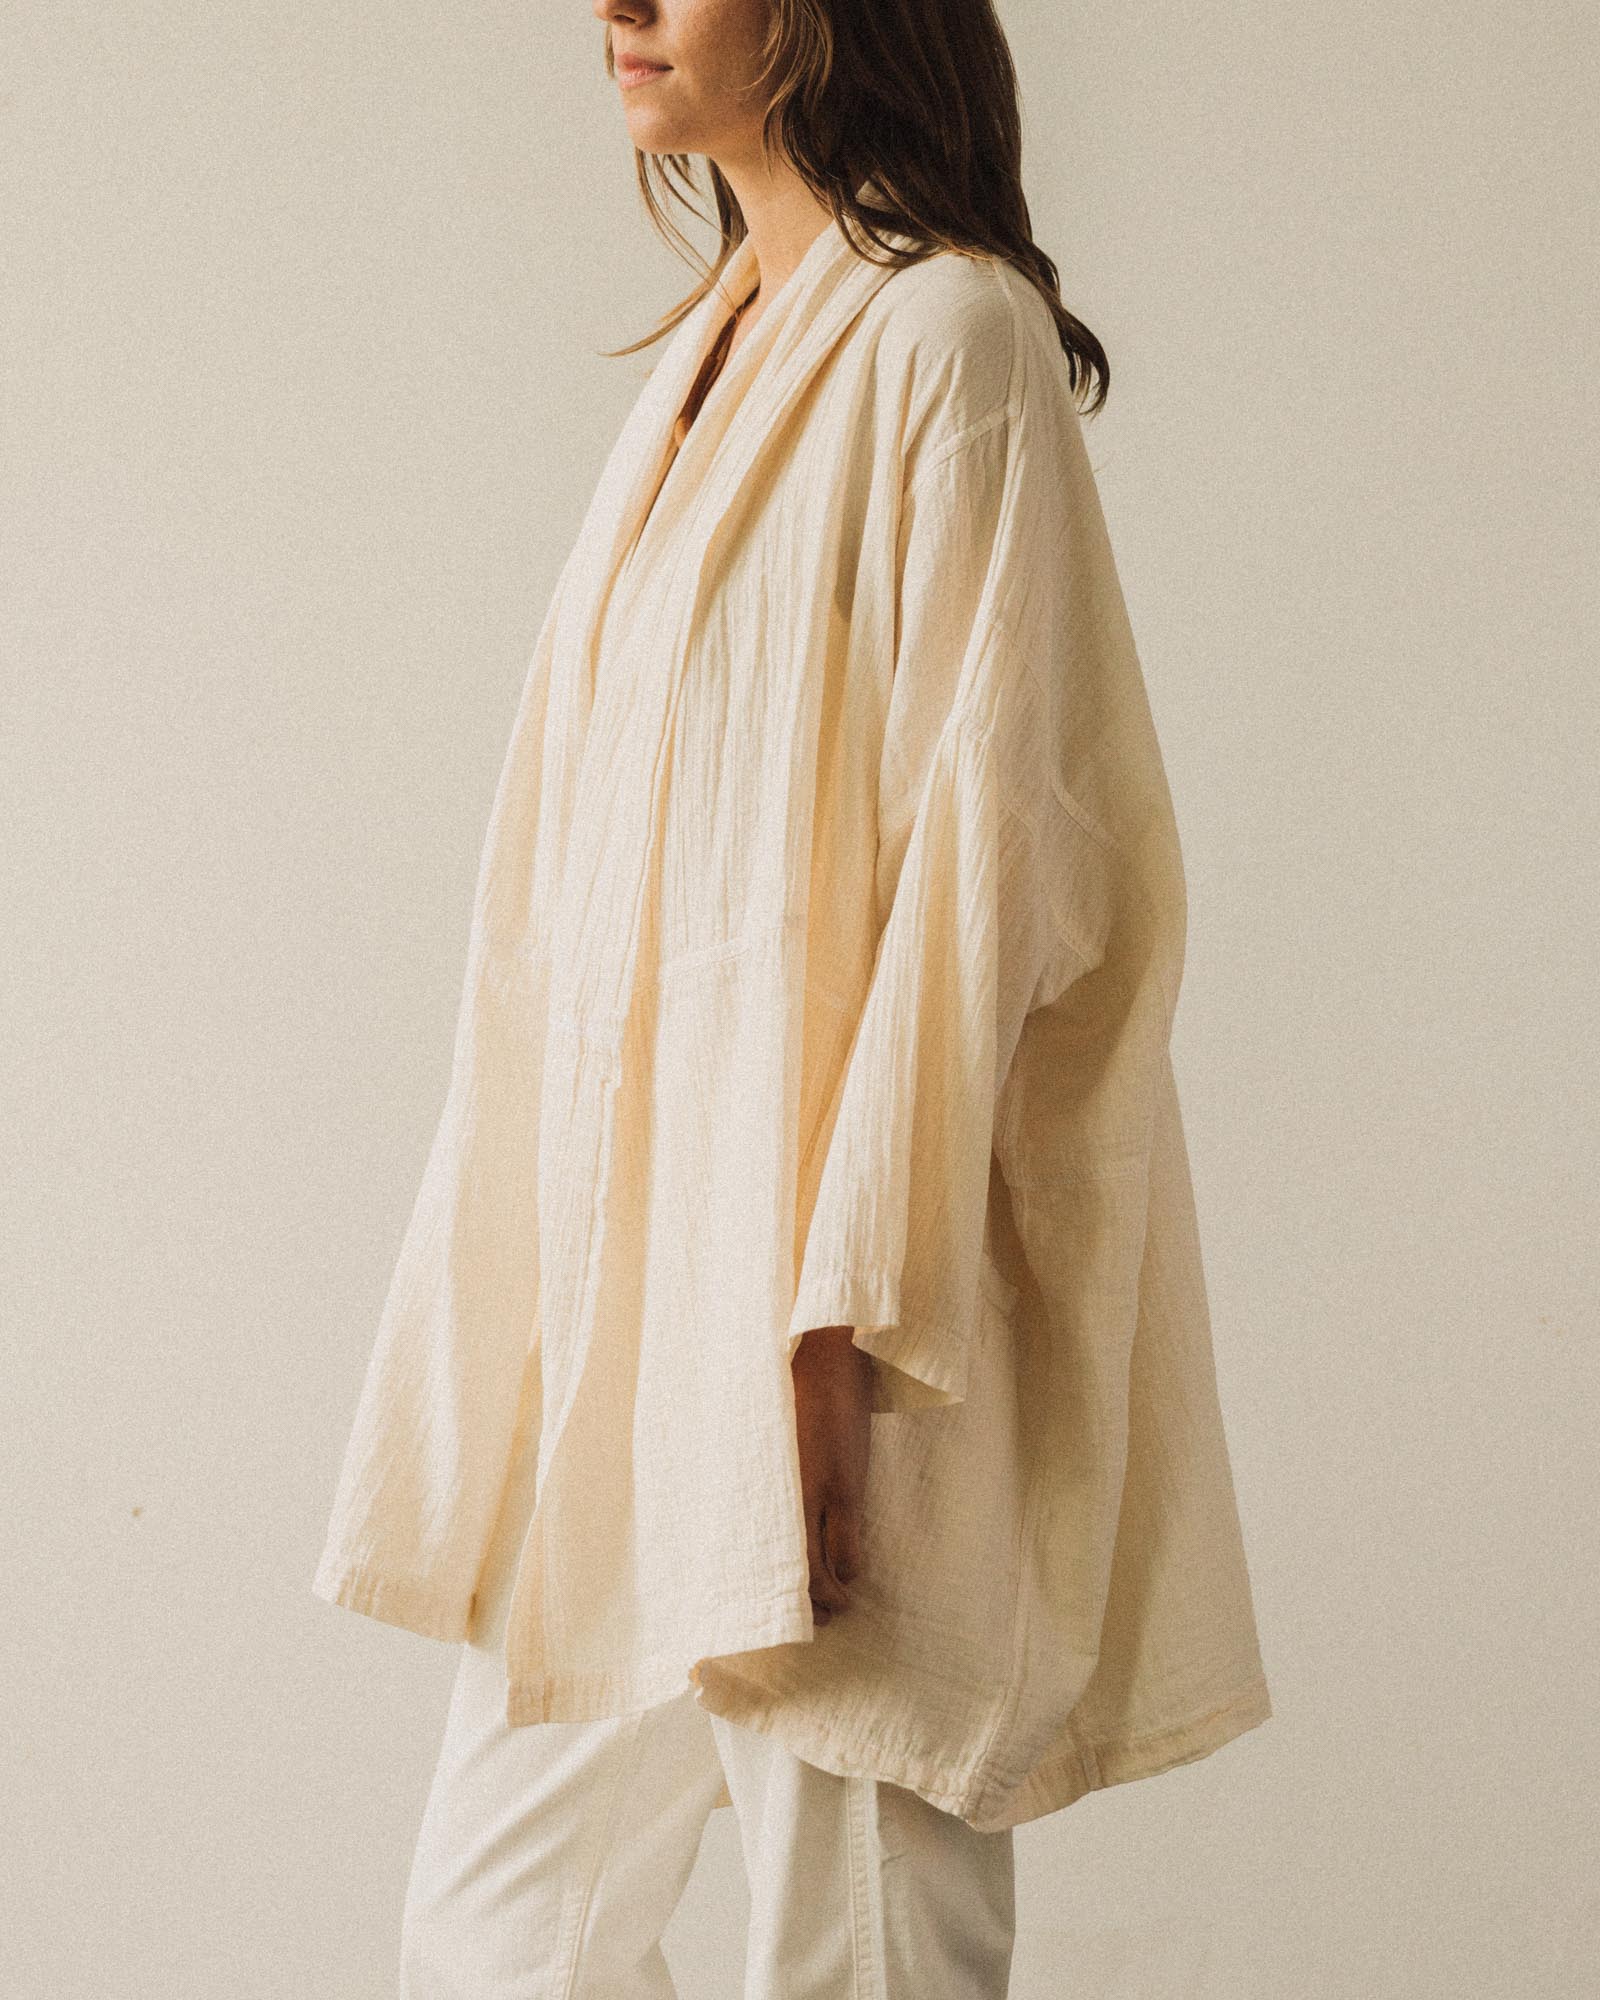 Atelier Delphine Haori Gauze Coat, Kinari